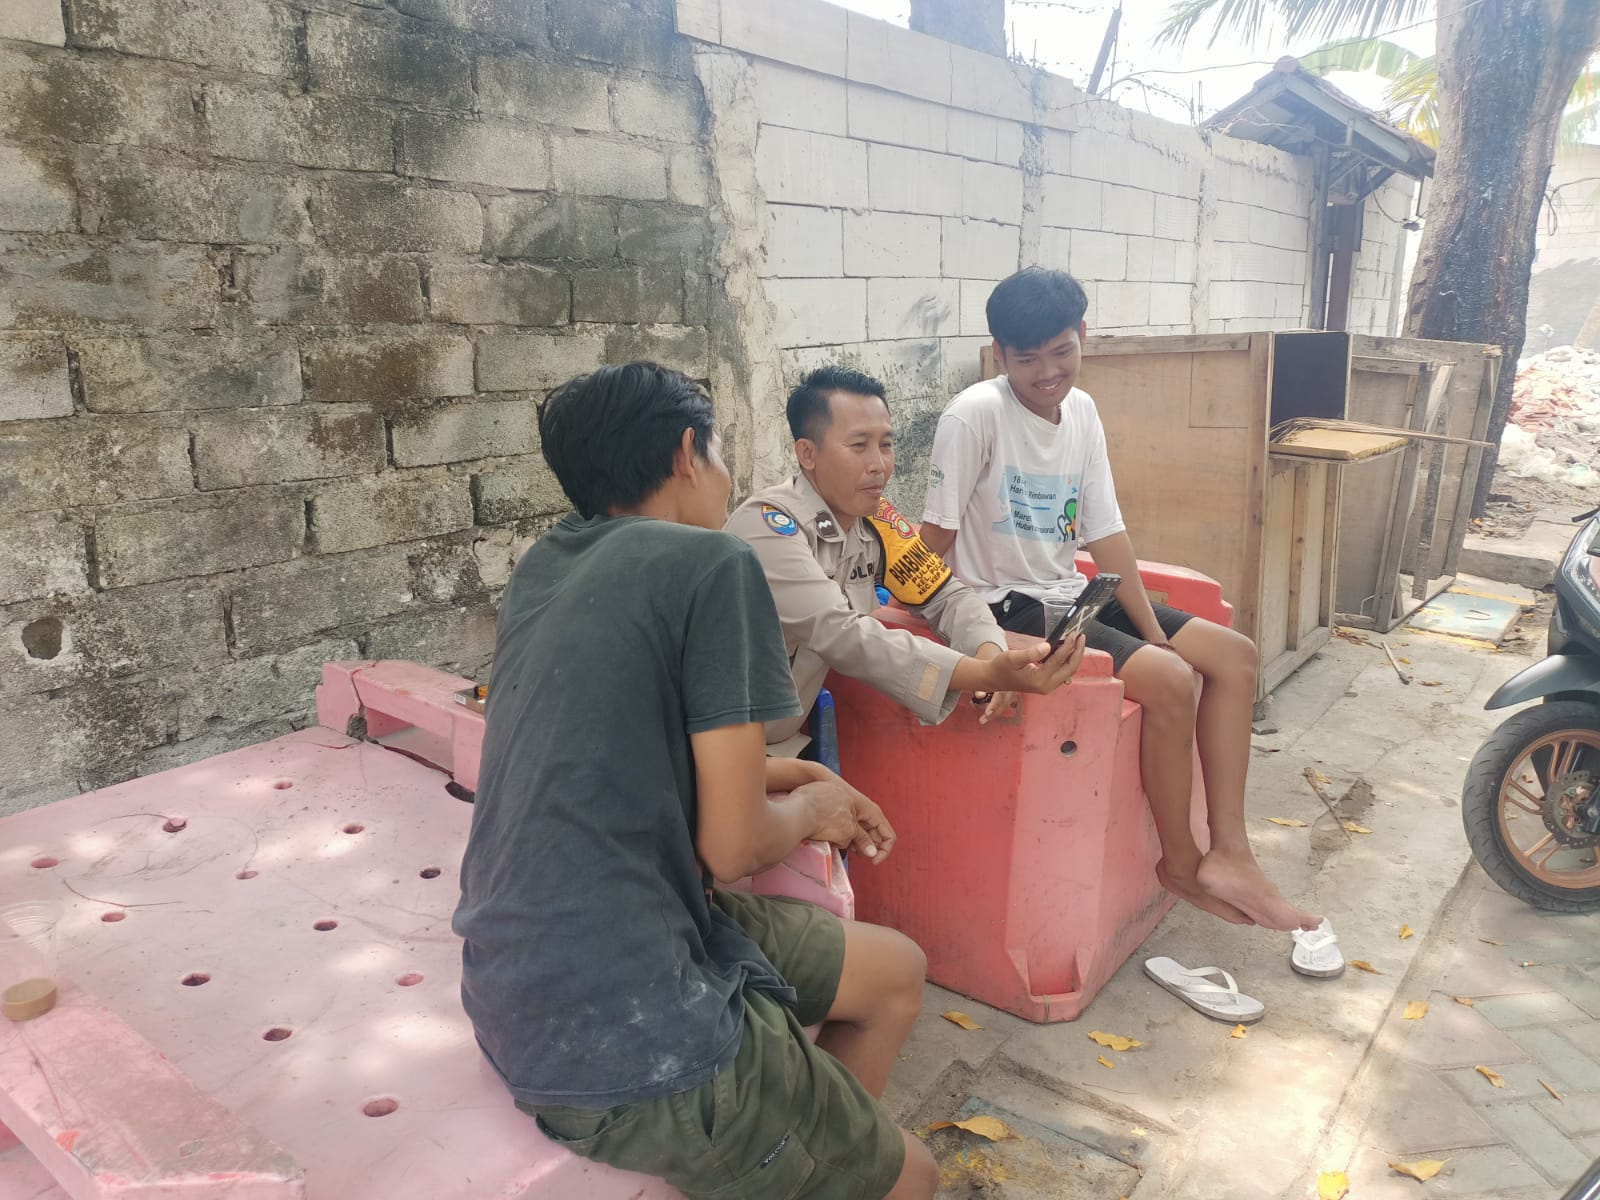 Bhabinkamtibmas Pulau Kelapa Sosialisasikan Hotline Polri 110 untuk Tingkatkan Keamanan dan Ketertiban